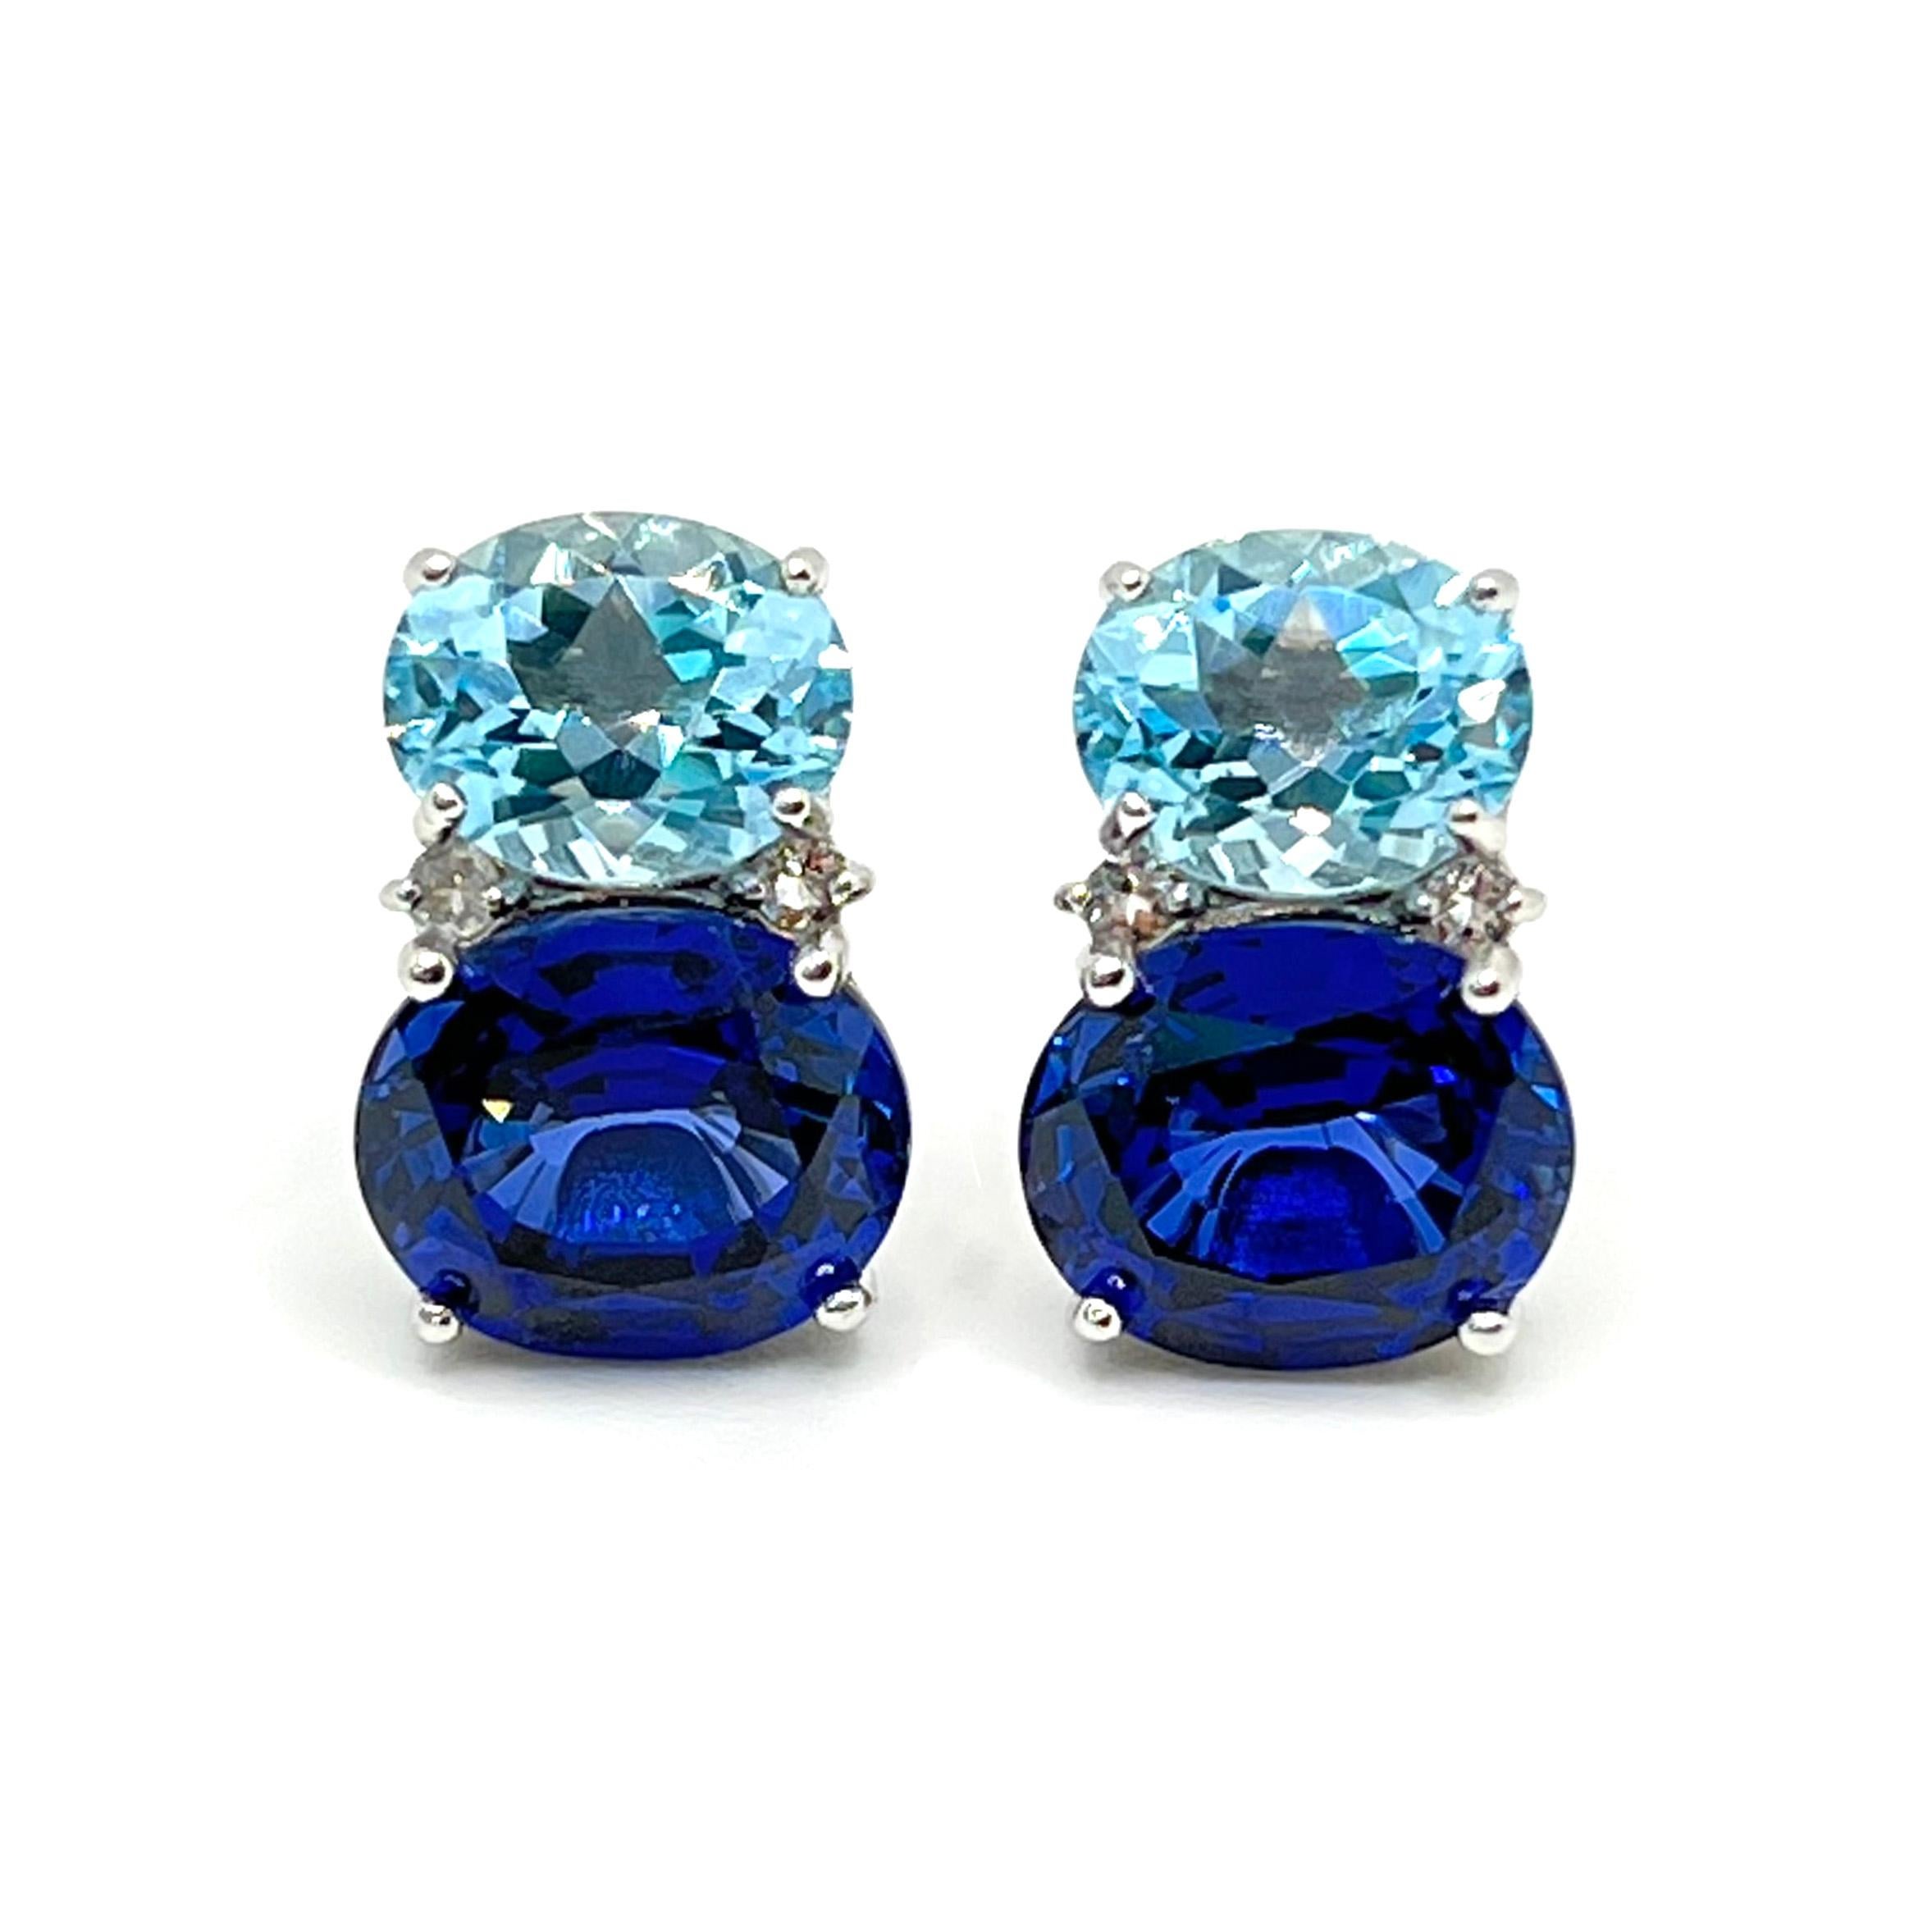 Dieses atemberaubende Paar Ohrringe besteht aus einem Paar ovaler himmelblauer Topase, einem im Labor hergestellten blauen Saphir und einem runden weißen Topas an der Seite. Die Ohrringe sind aus platin-rhodiniertem Sterlingsilber gefertigt. Die